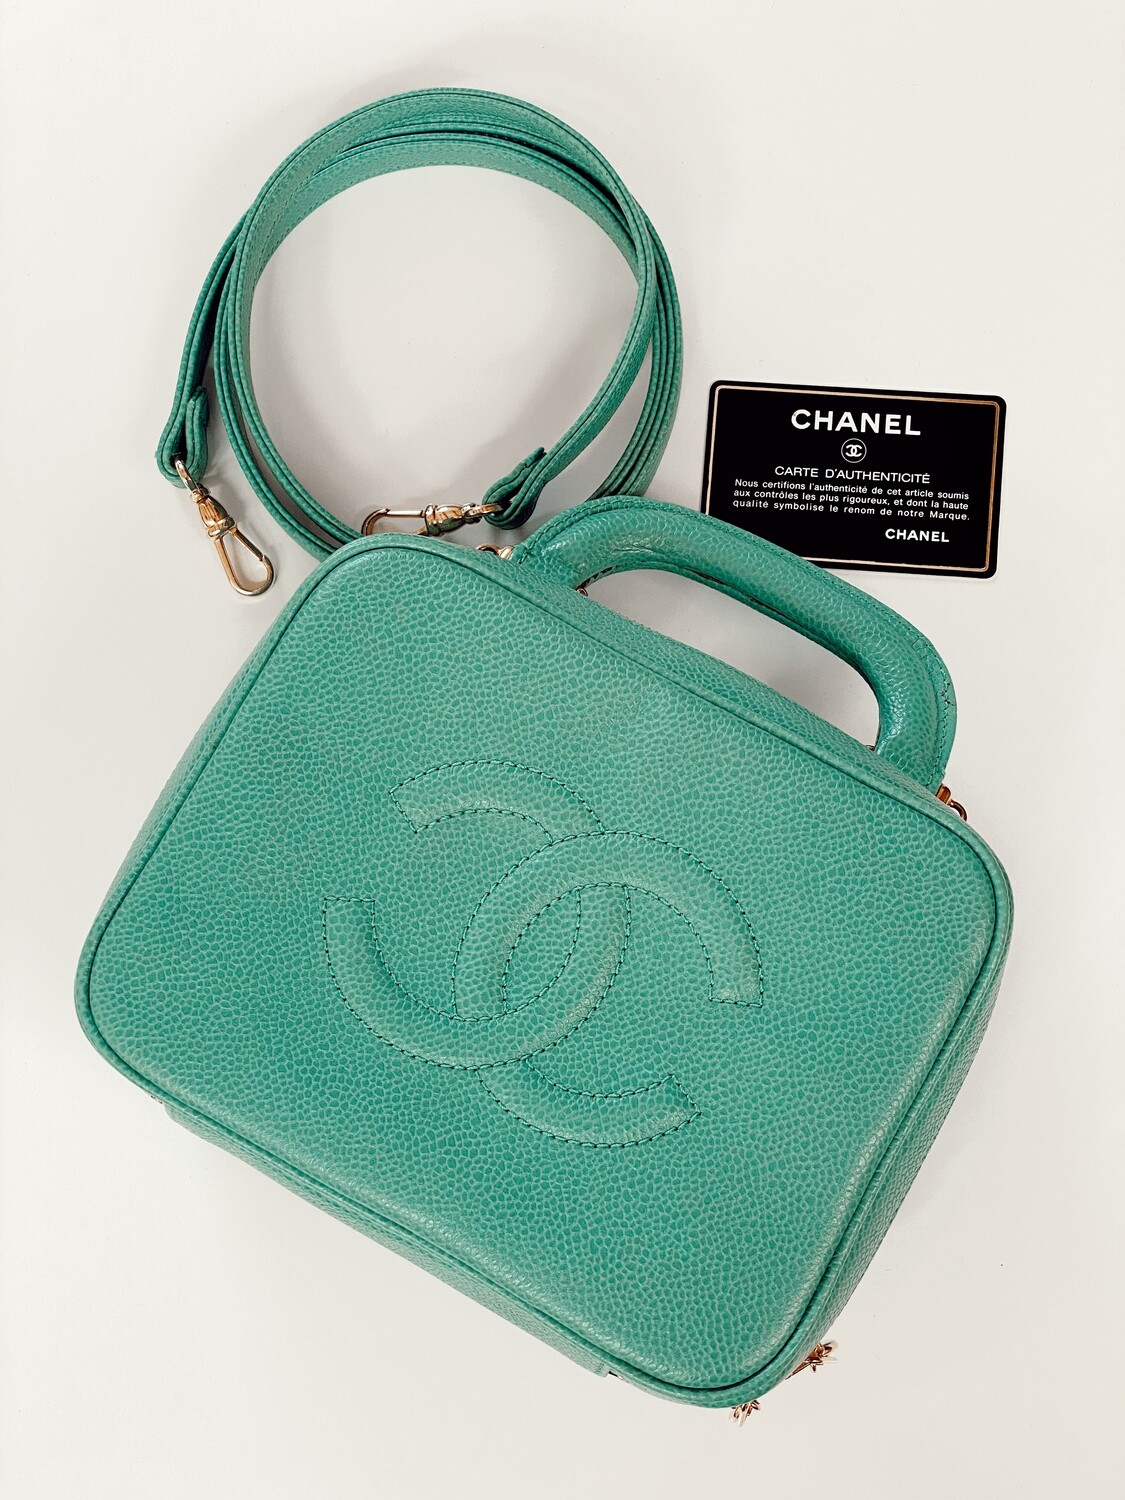 Chanel N/S Filigree Vanity Case - Blue Shoulder Bags, Handbags